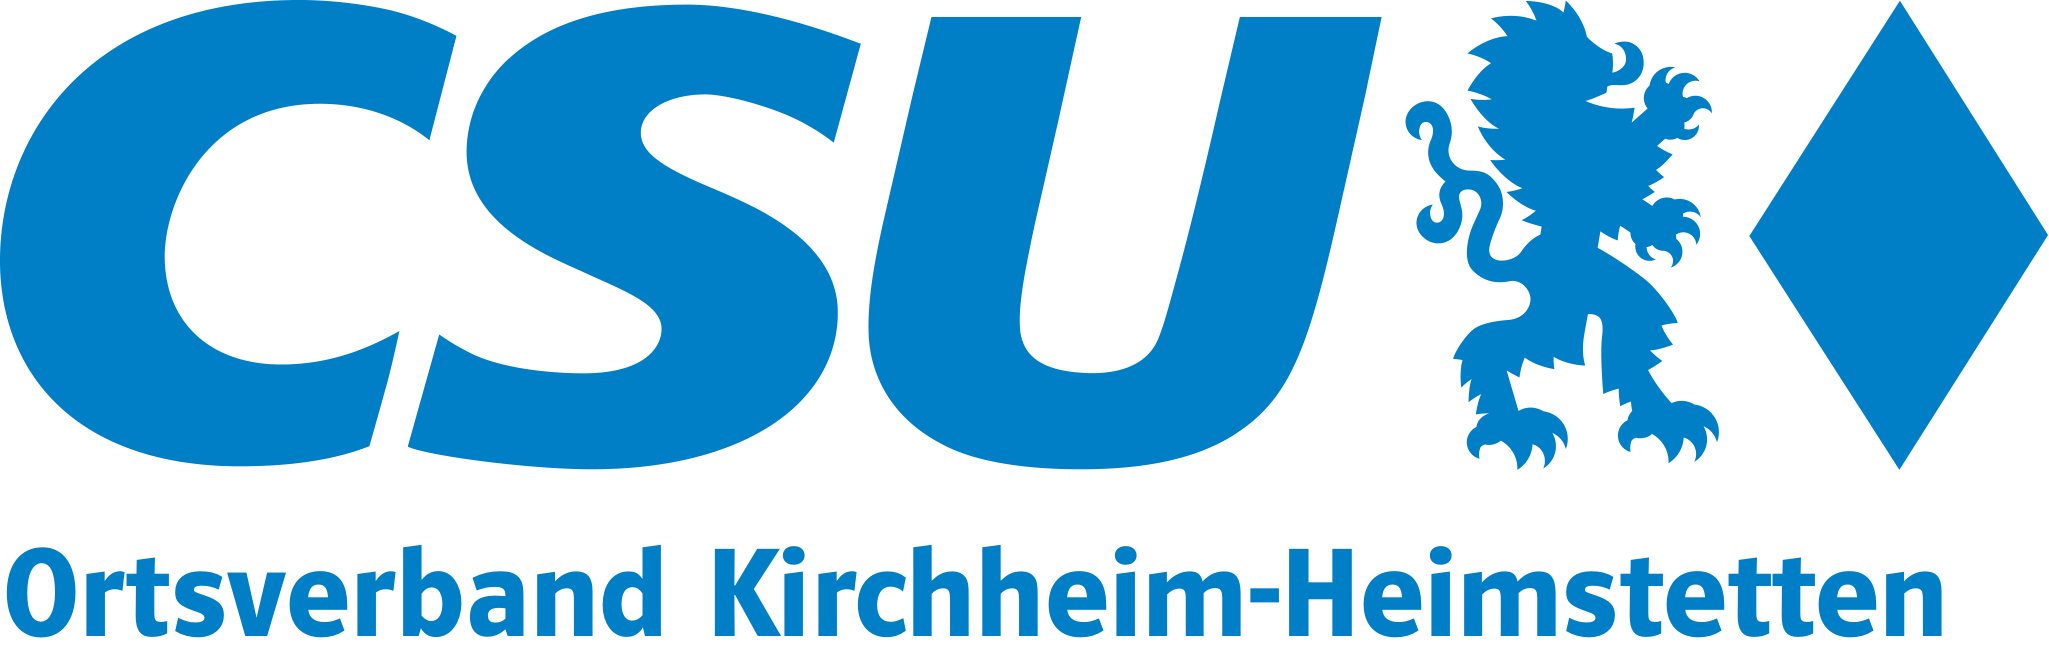 CSU Logo blau